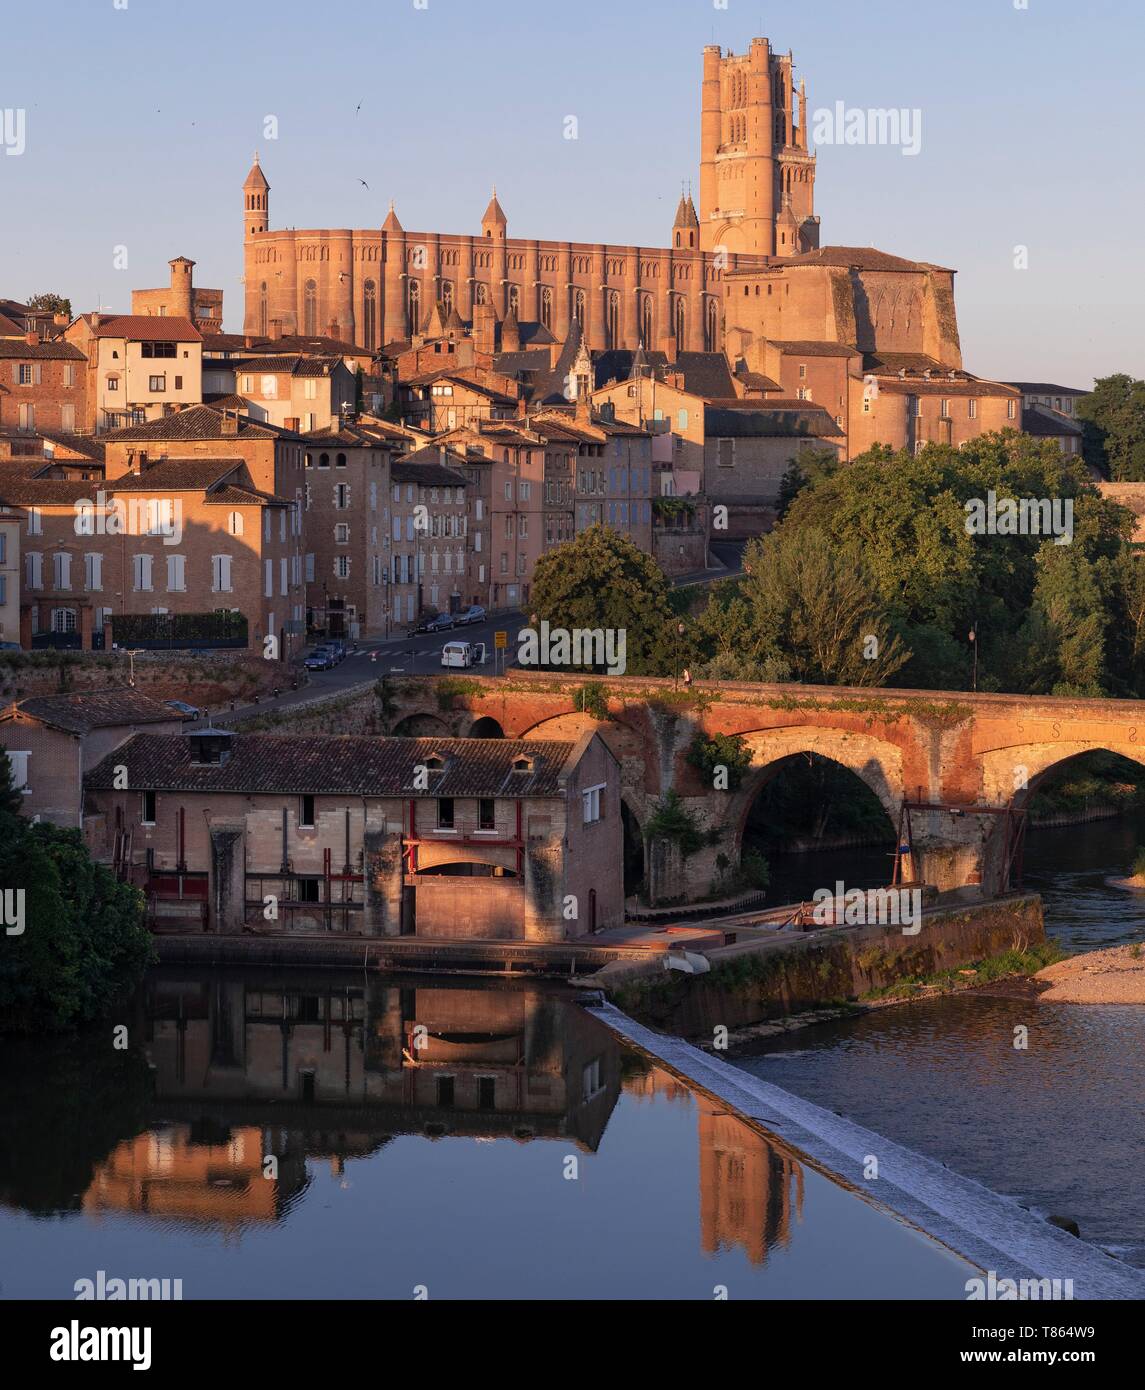 Frankreich, Tarn, Albi, als Weltkulturerbe von der UNESCO, der Dom, die Altstadt und den Fluss Tarn aufgeführt Stockfoto